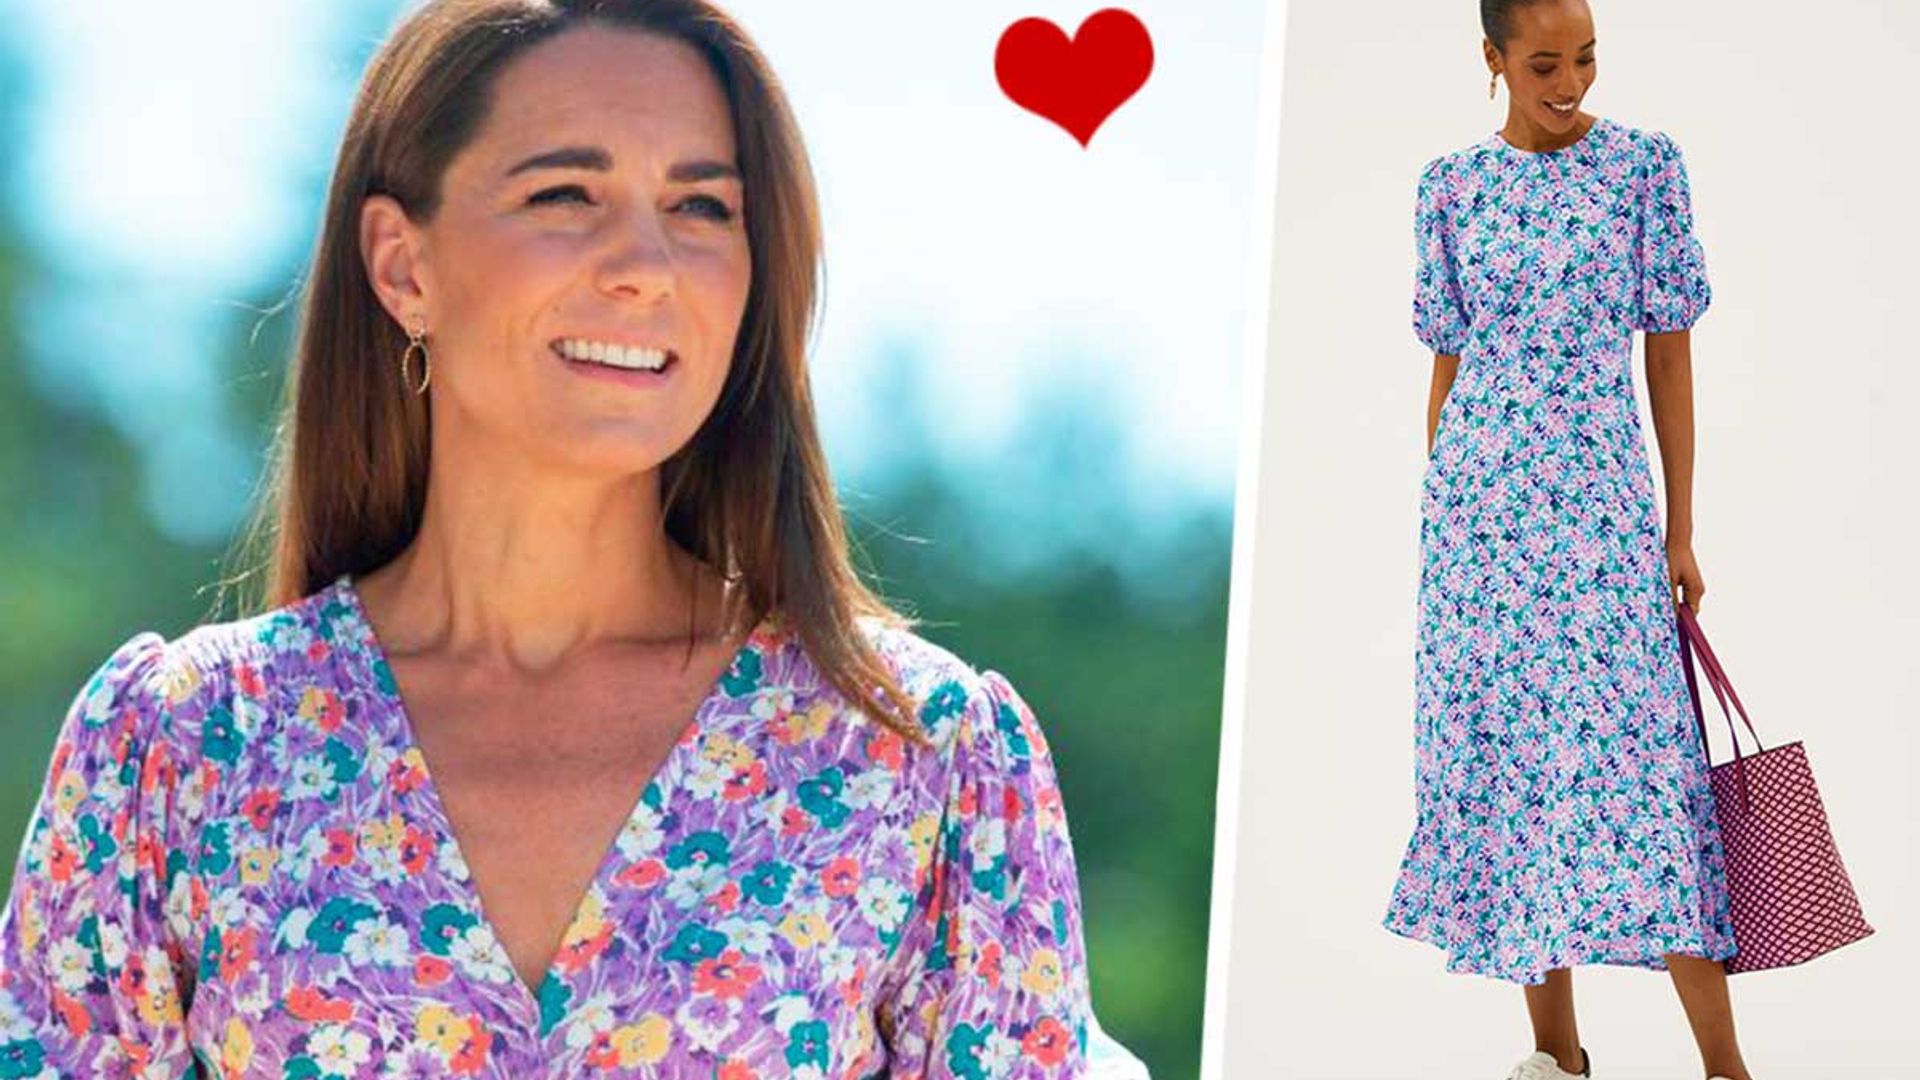 Marks & Spencer's new £39.50 dress is a dead ringer for Kate Middleton ...